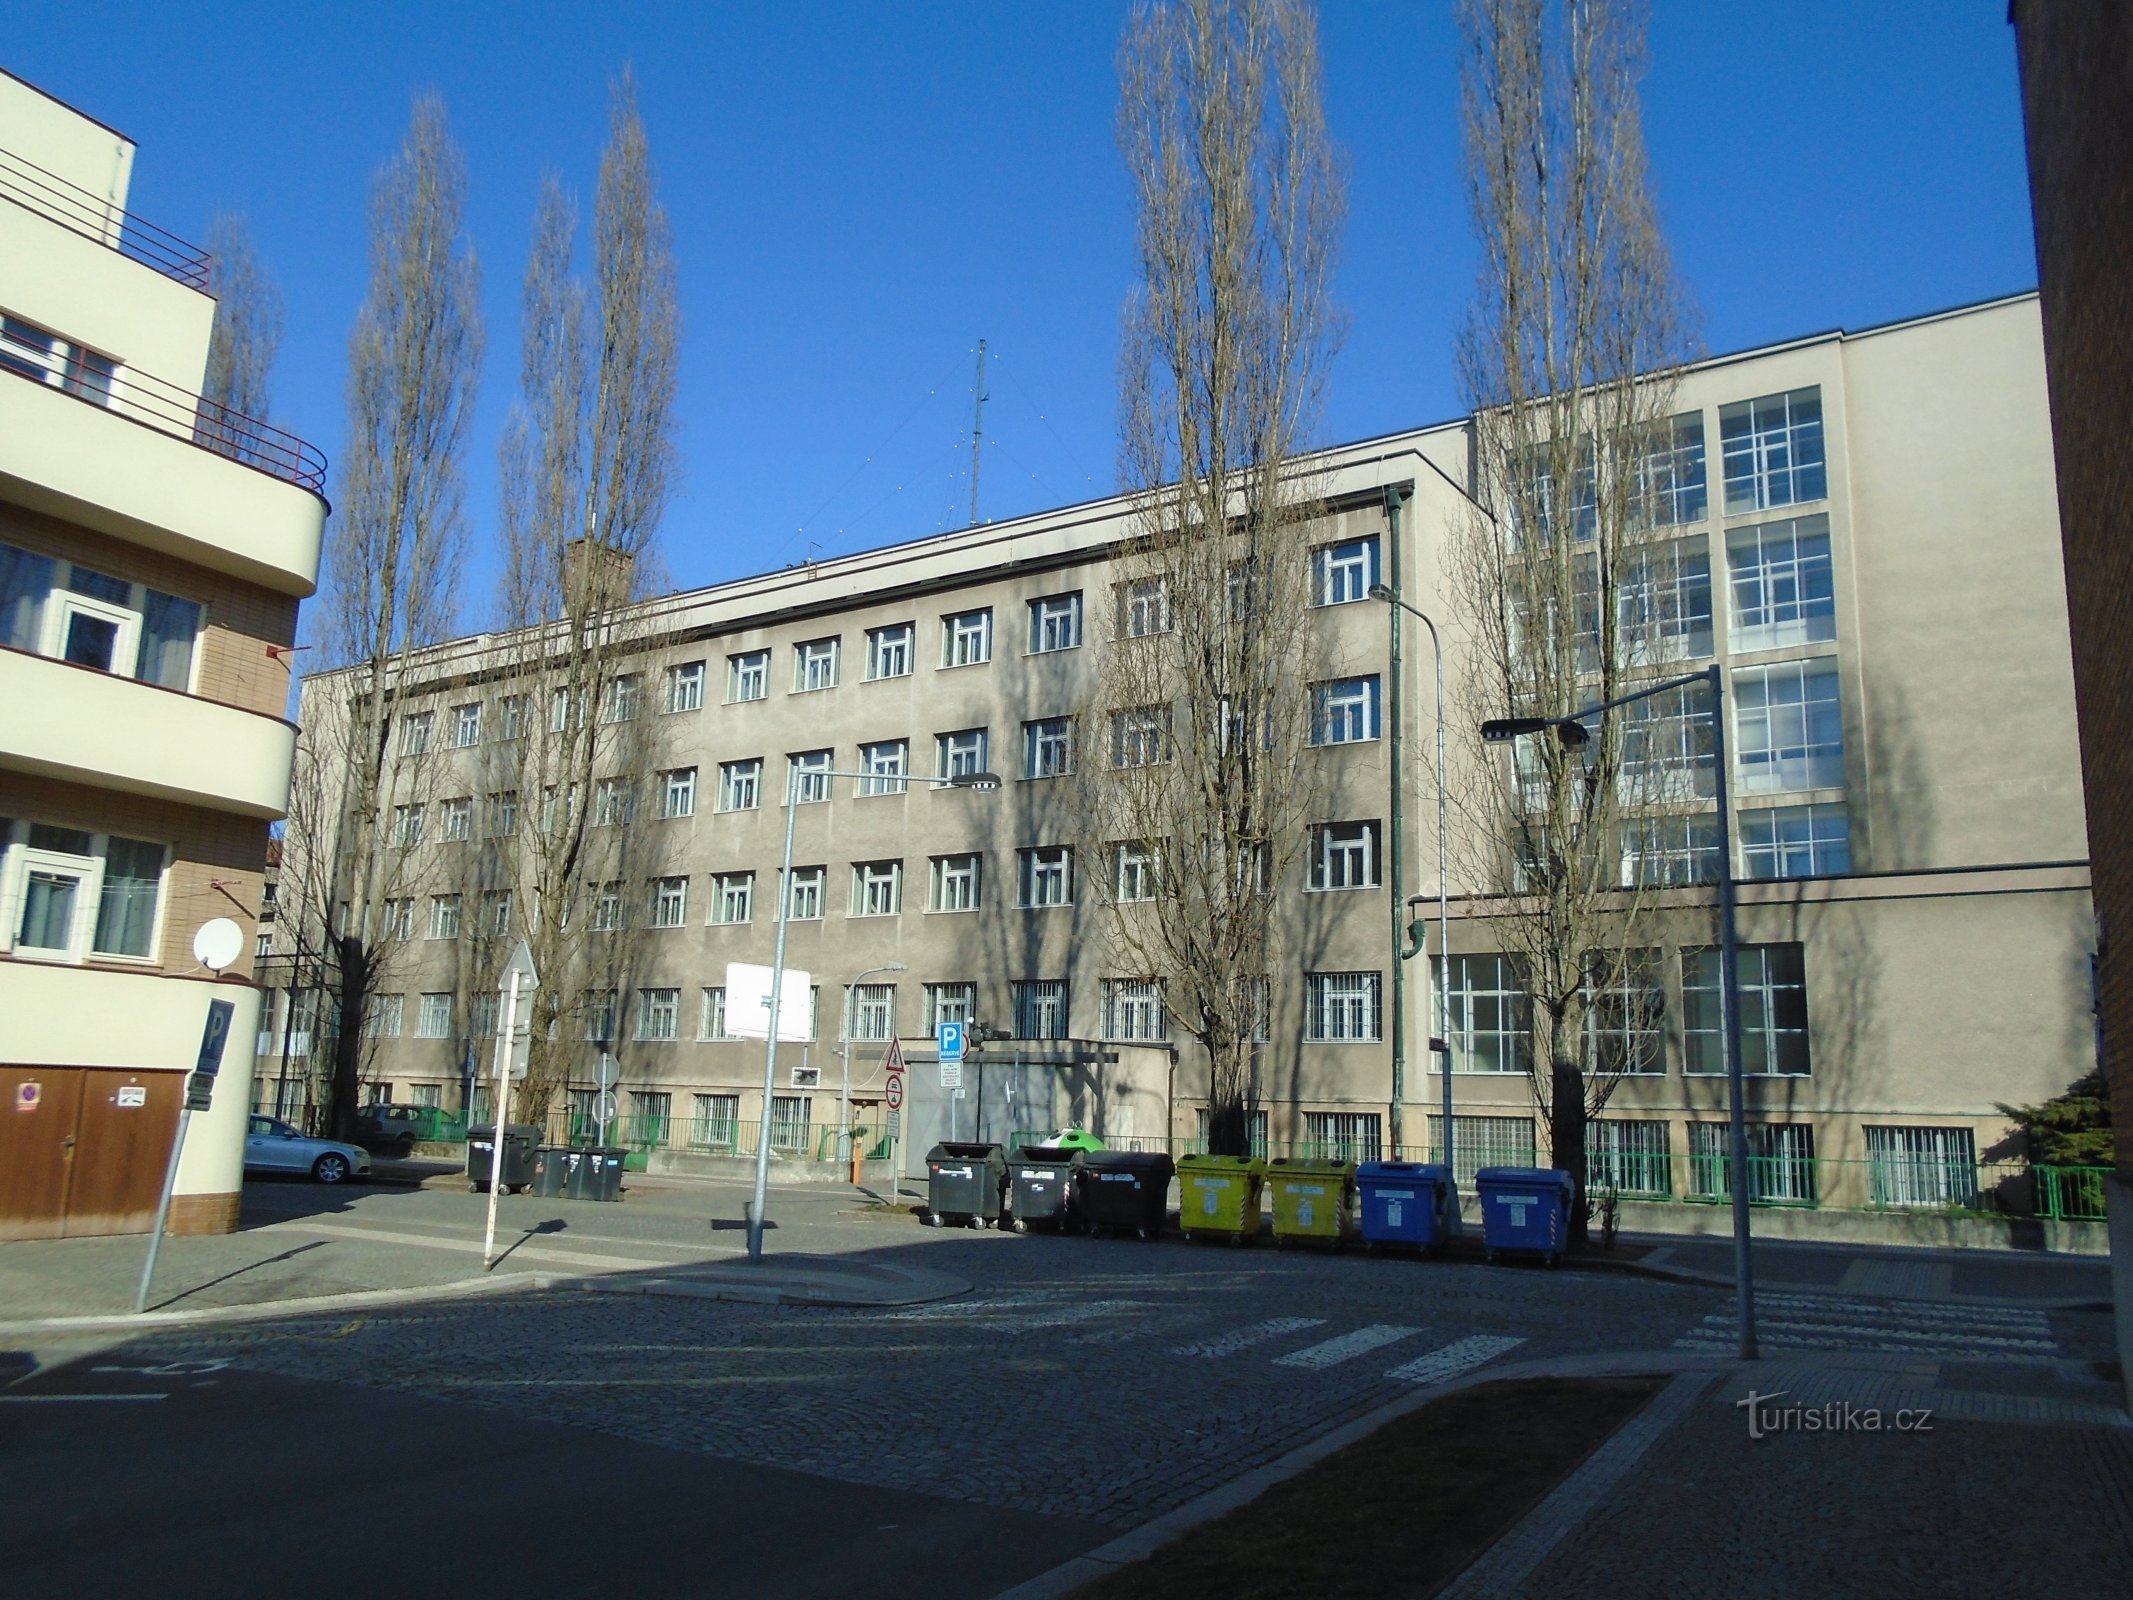 Ulrichovo náměstí No. 810 (Hradec Králové, 25.2.2018)